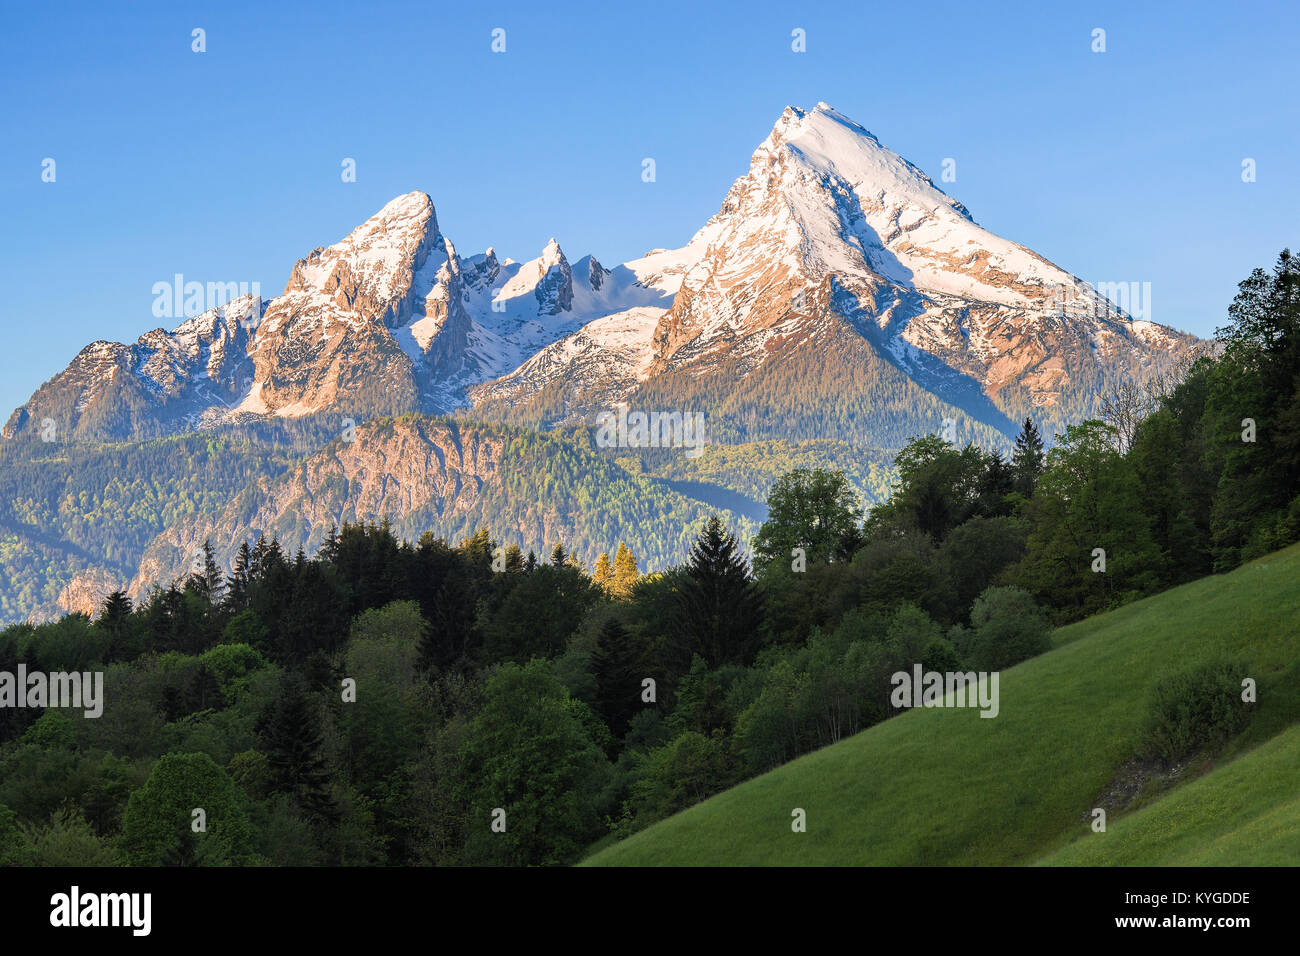 Snow-incoronato cime del monte Watzmann nella famosa bavarese del parco nazionale di Berchtesgaden nelle Alpi tedesche Foto Stock